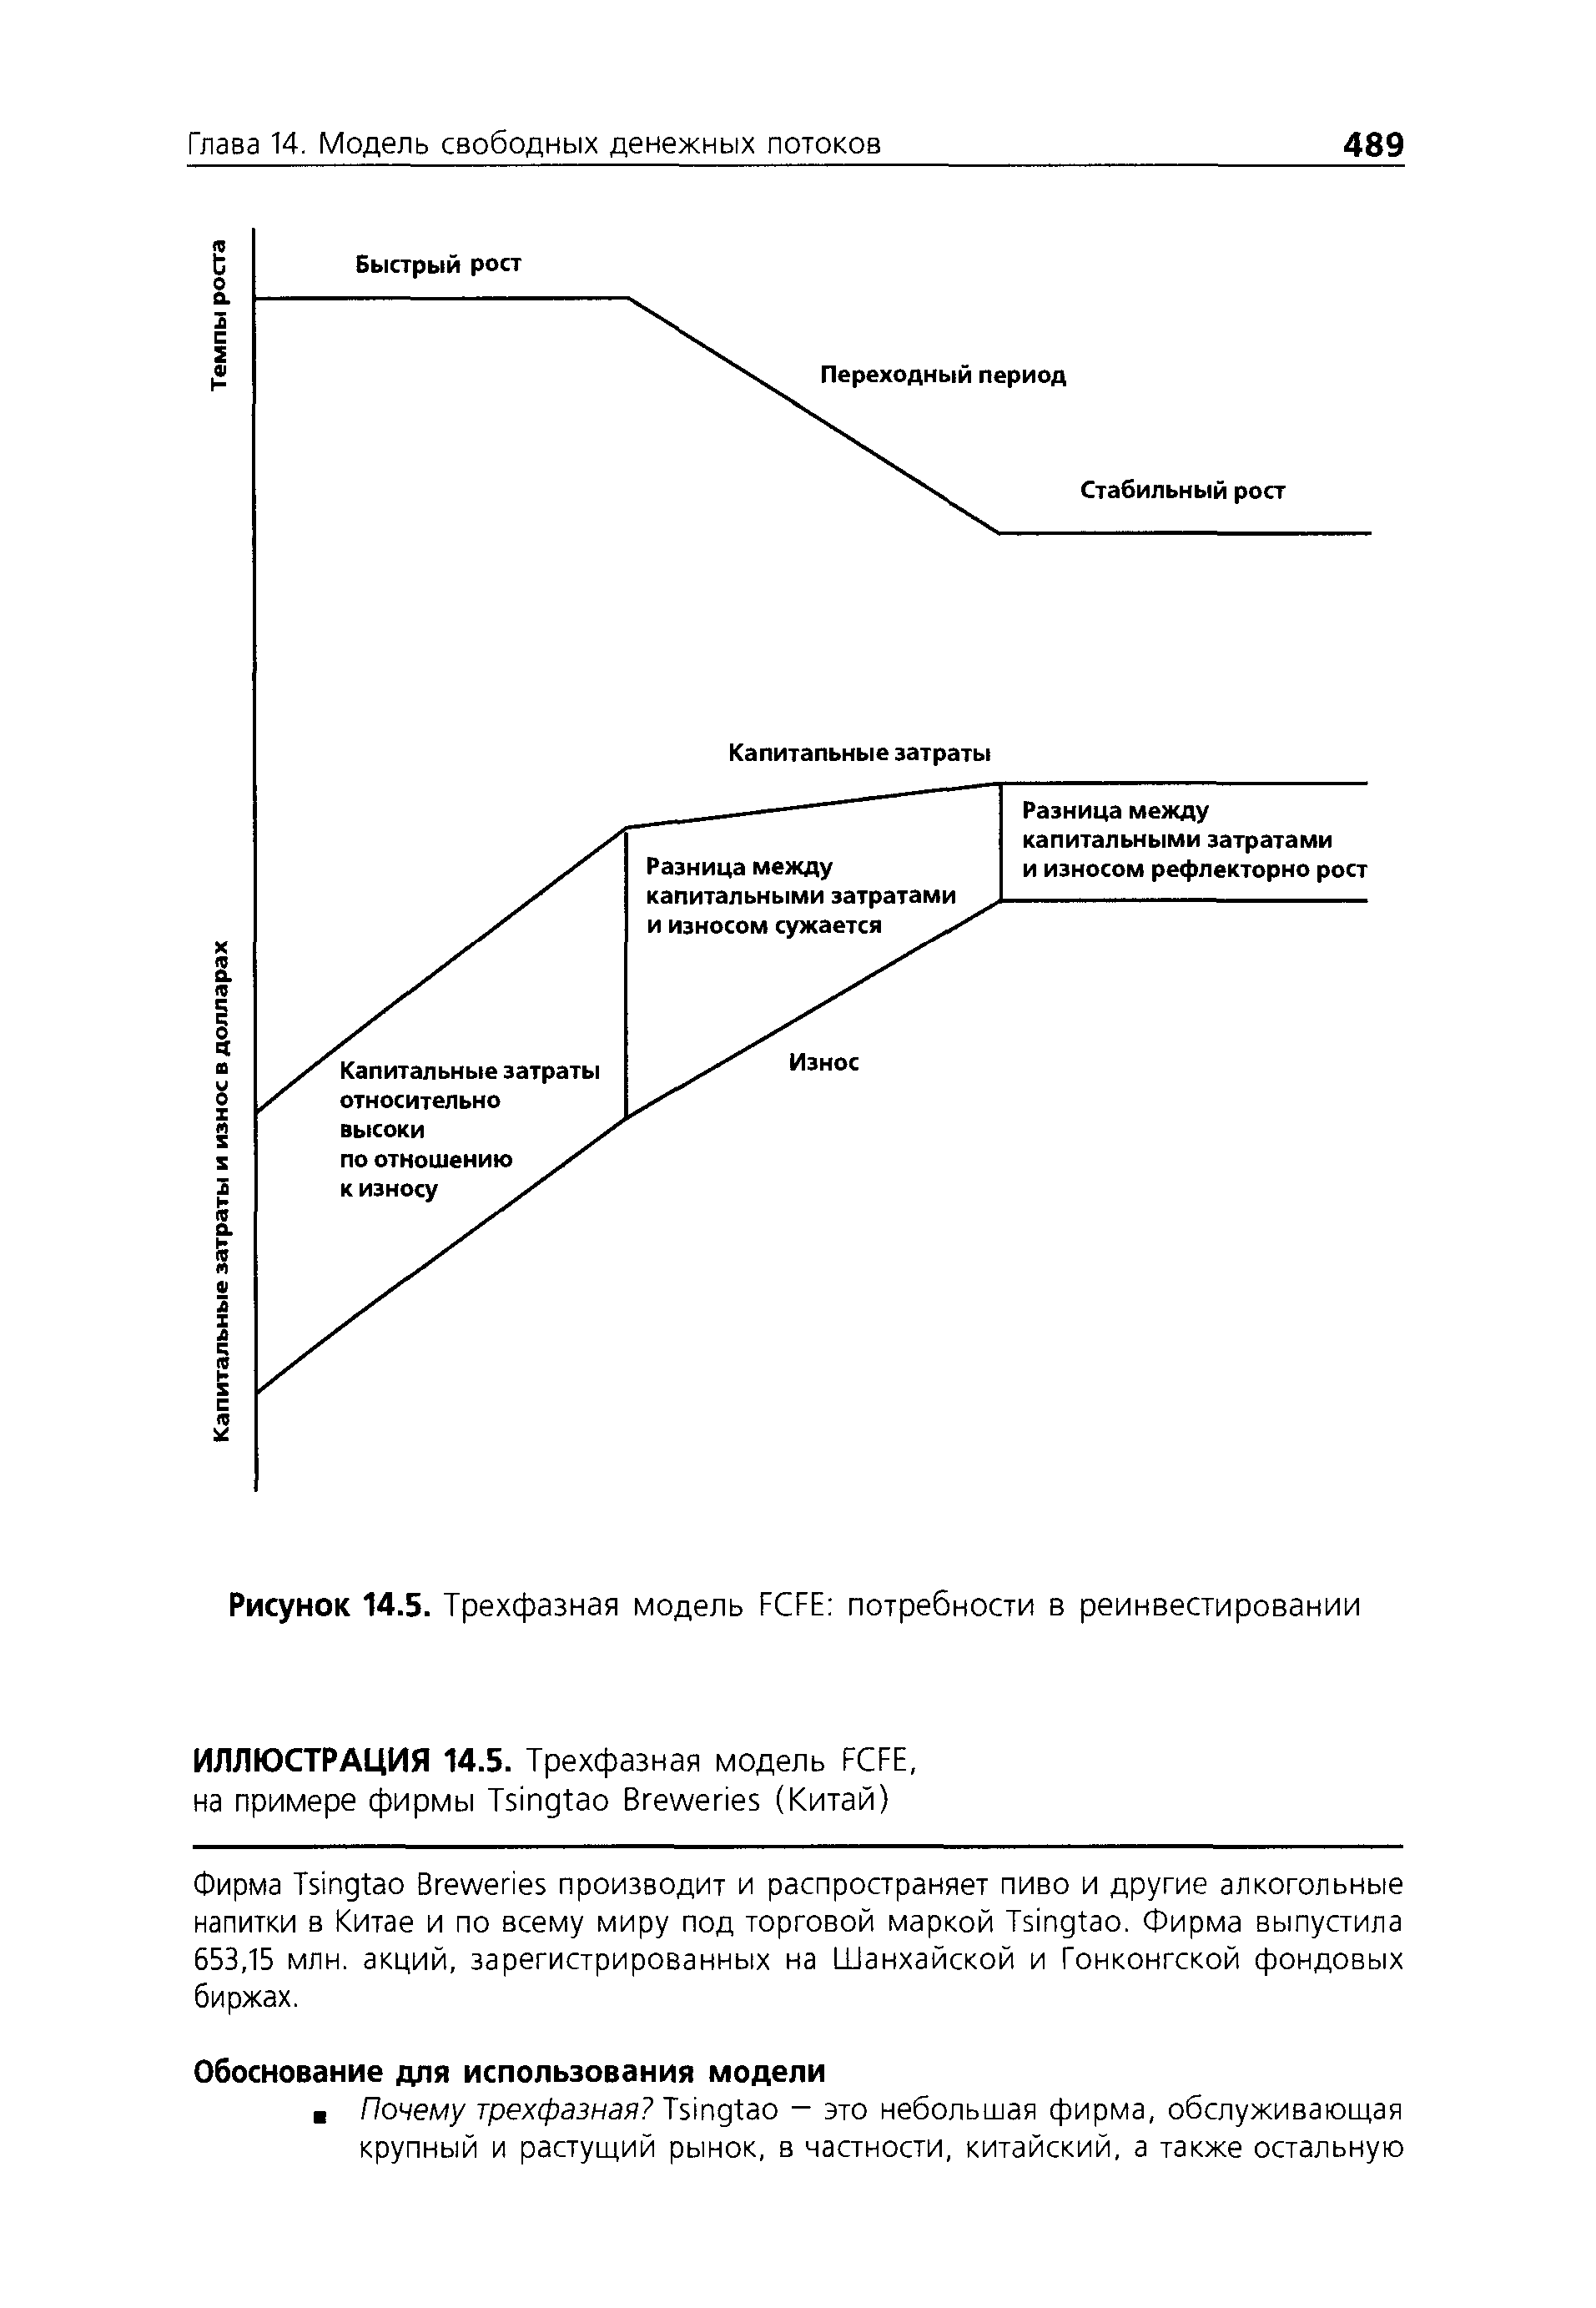 Рисунок 14.5. Трехфазная модель F FE потребности в реинвестировании
